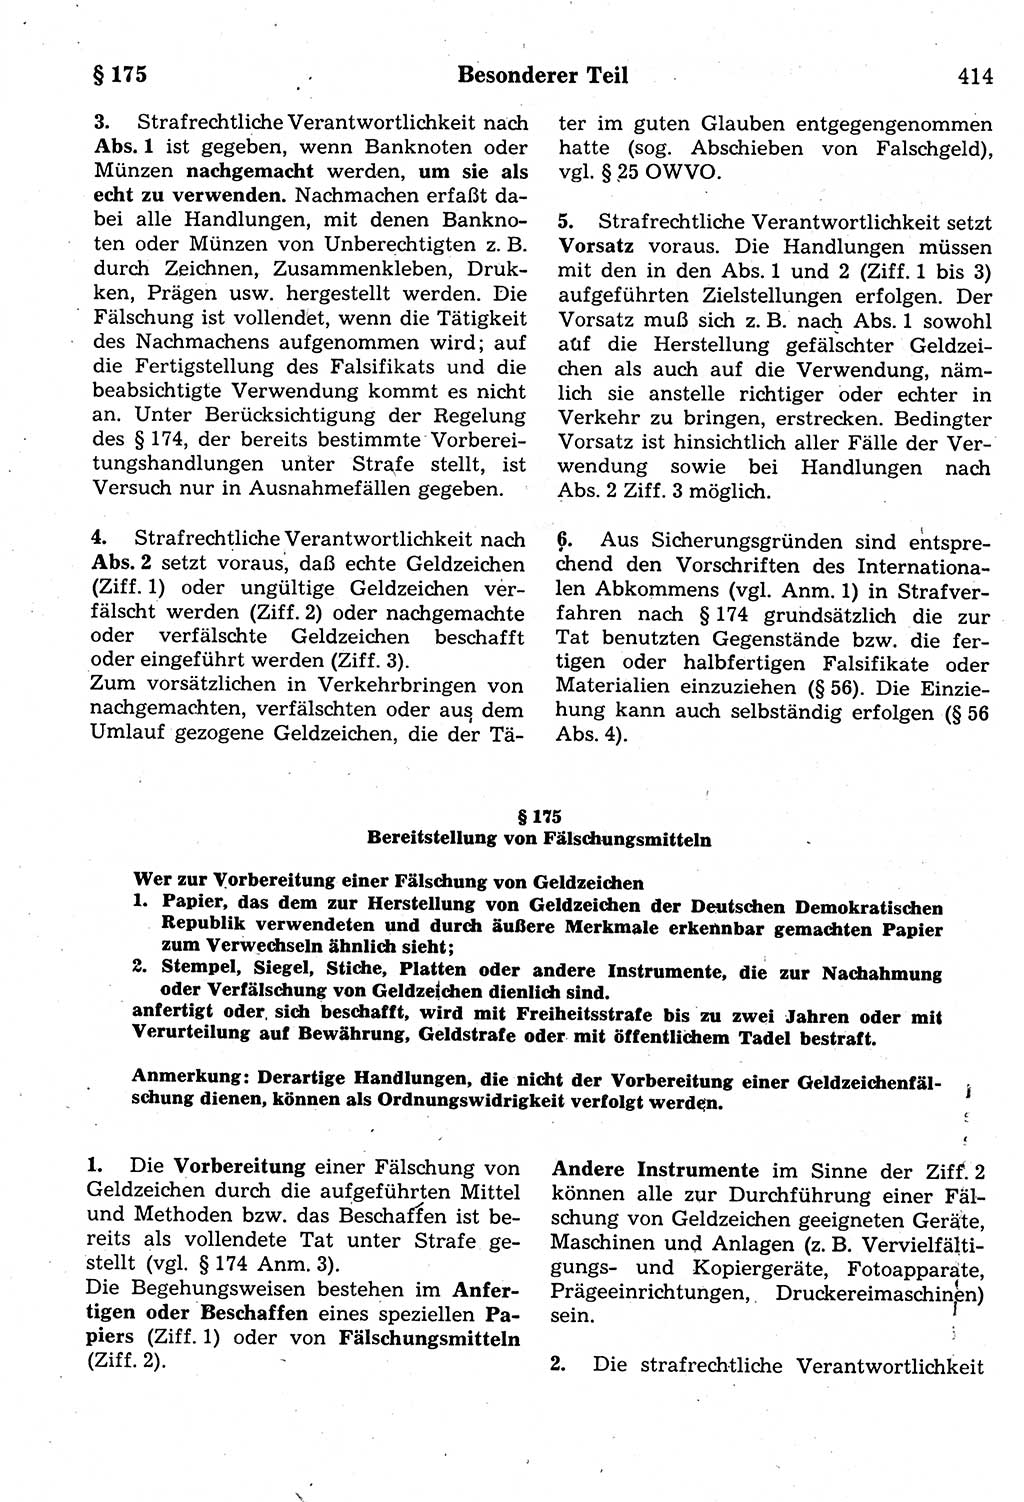 Strafrecht der Deutschen Demokratischen Republik (DDR), Kommentar zum Strafgesetzbuch (StGB) 1987, Seite 414 (Strafr. DDR Komm. StGB 1987, S. 414)